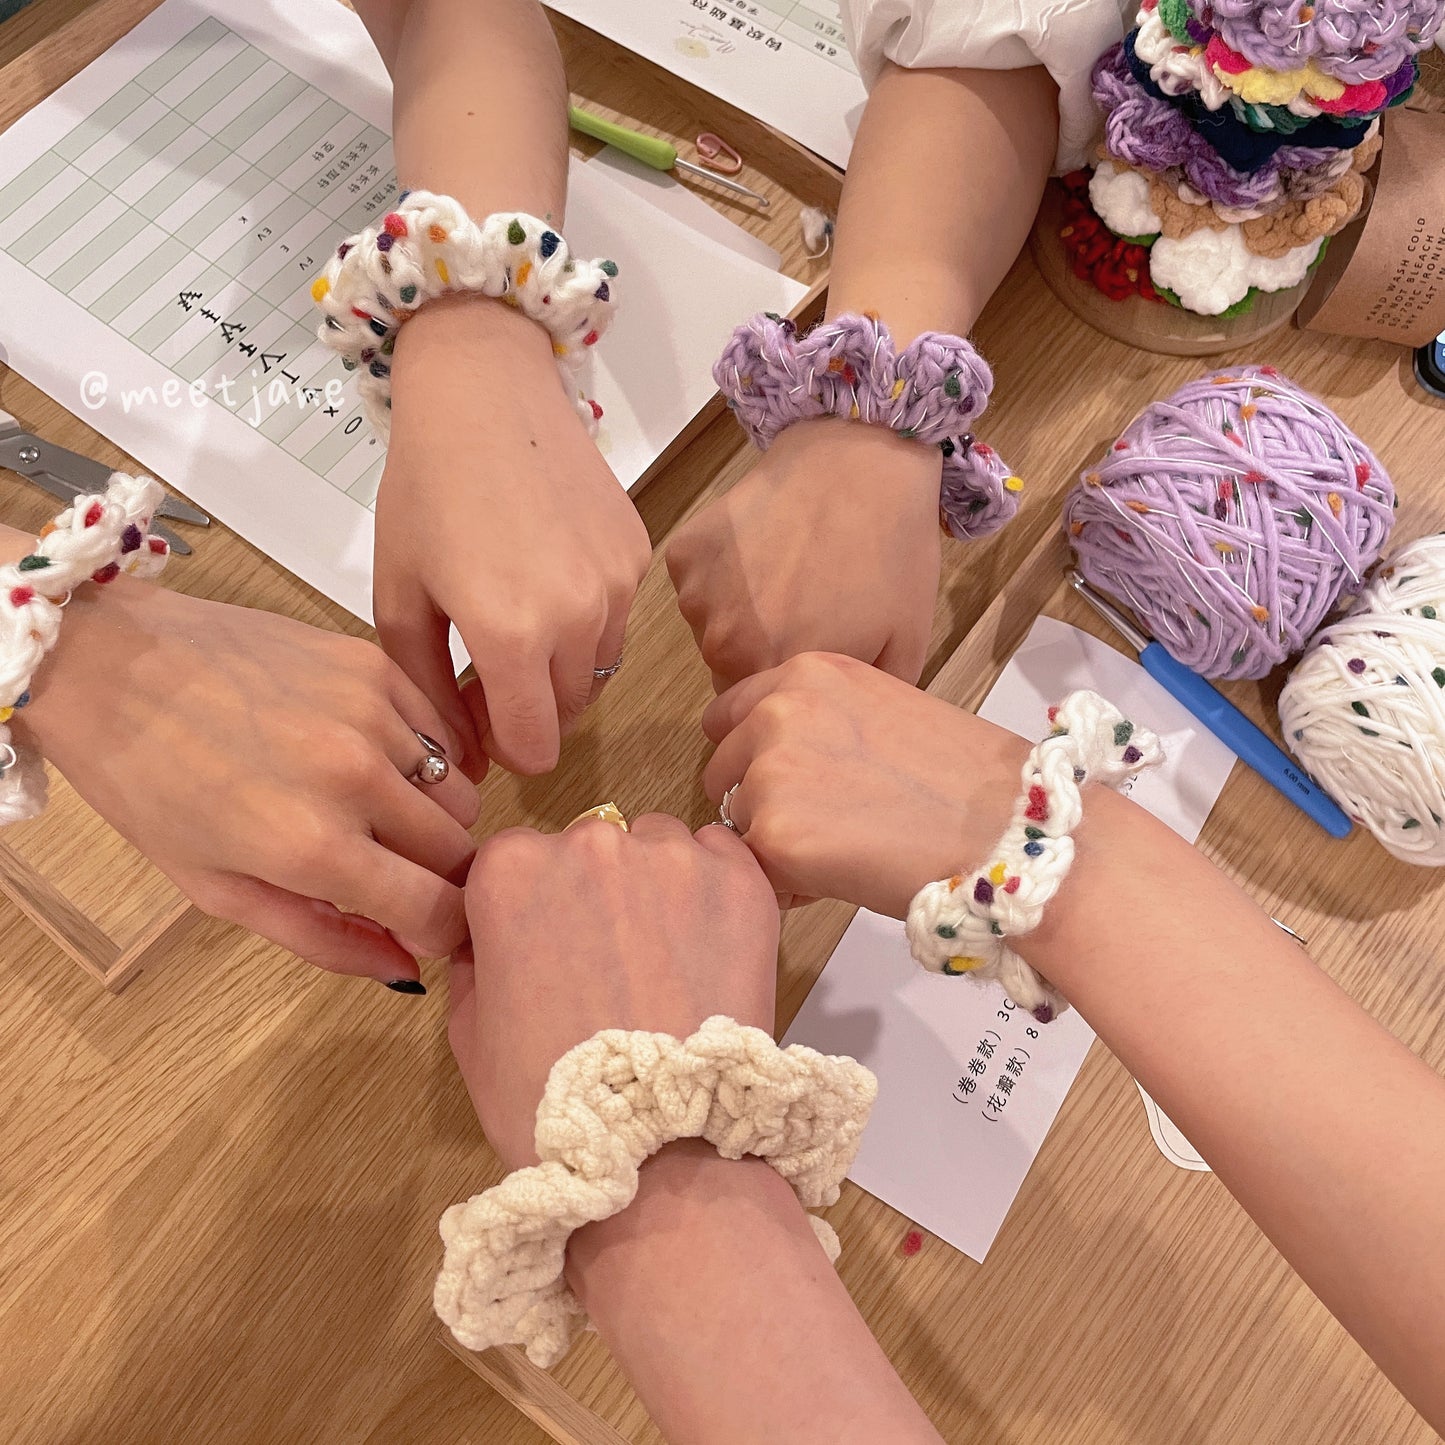 Crochet Workshop| Learn to crochet scrunchies 【1 session】Beginner friendly